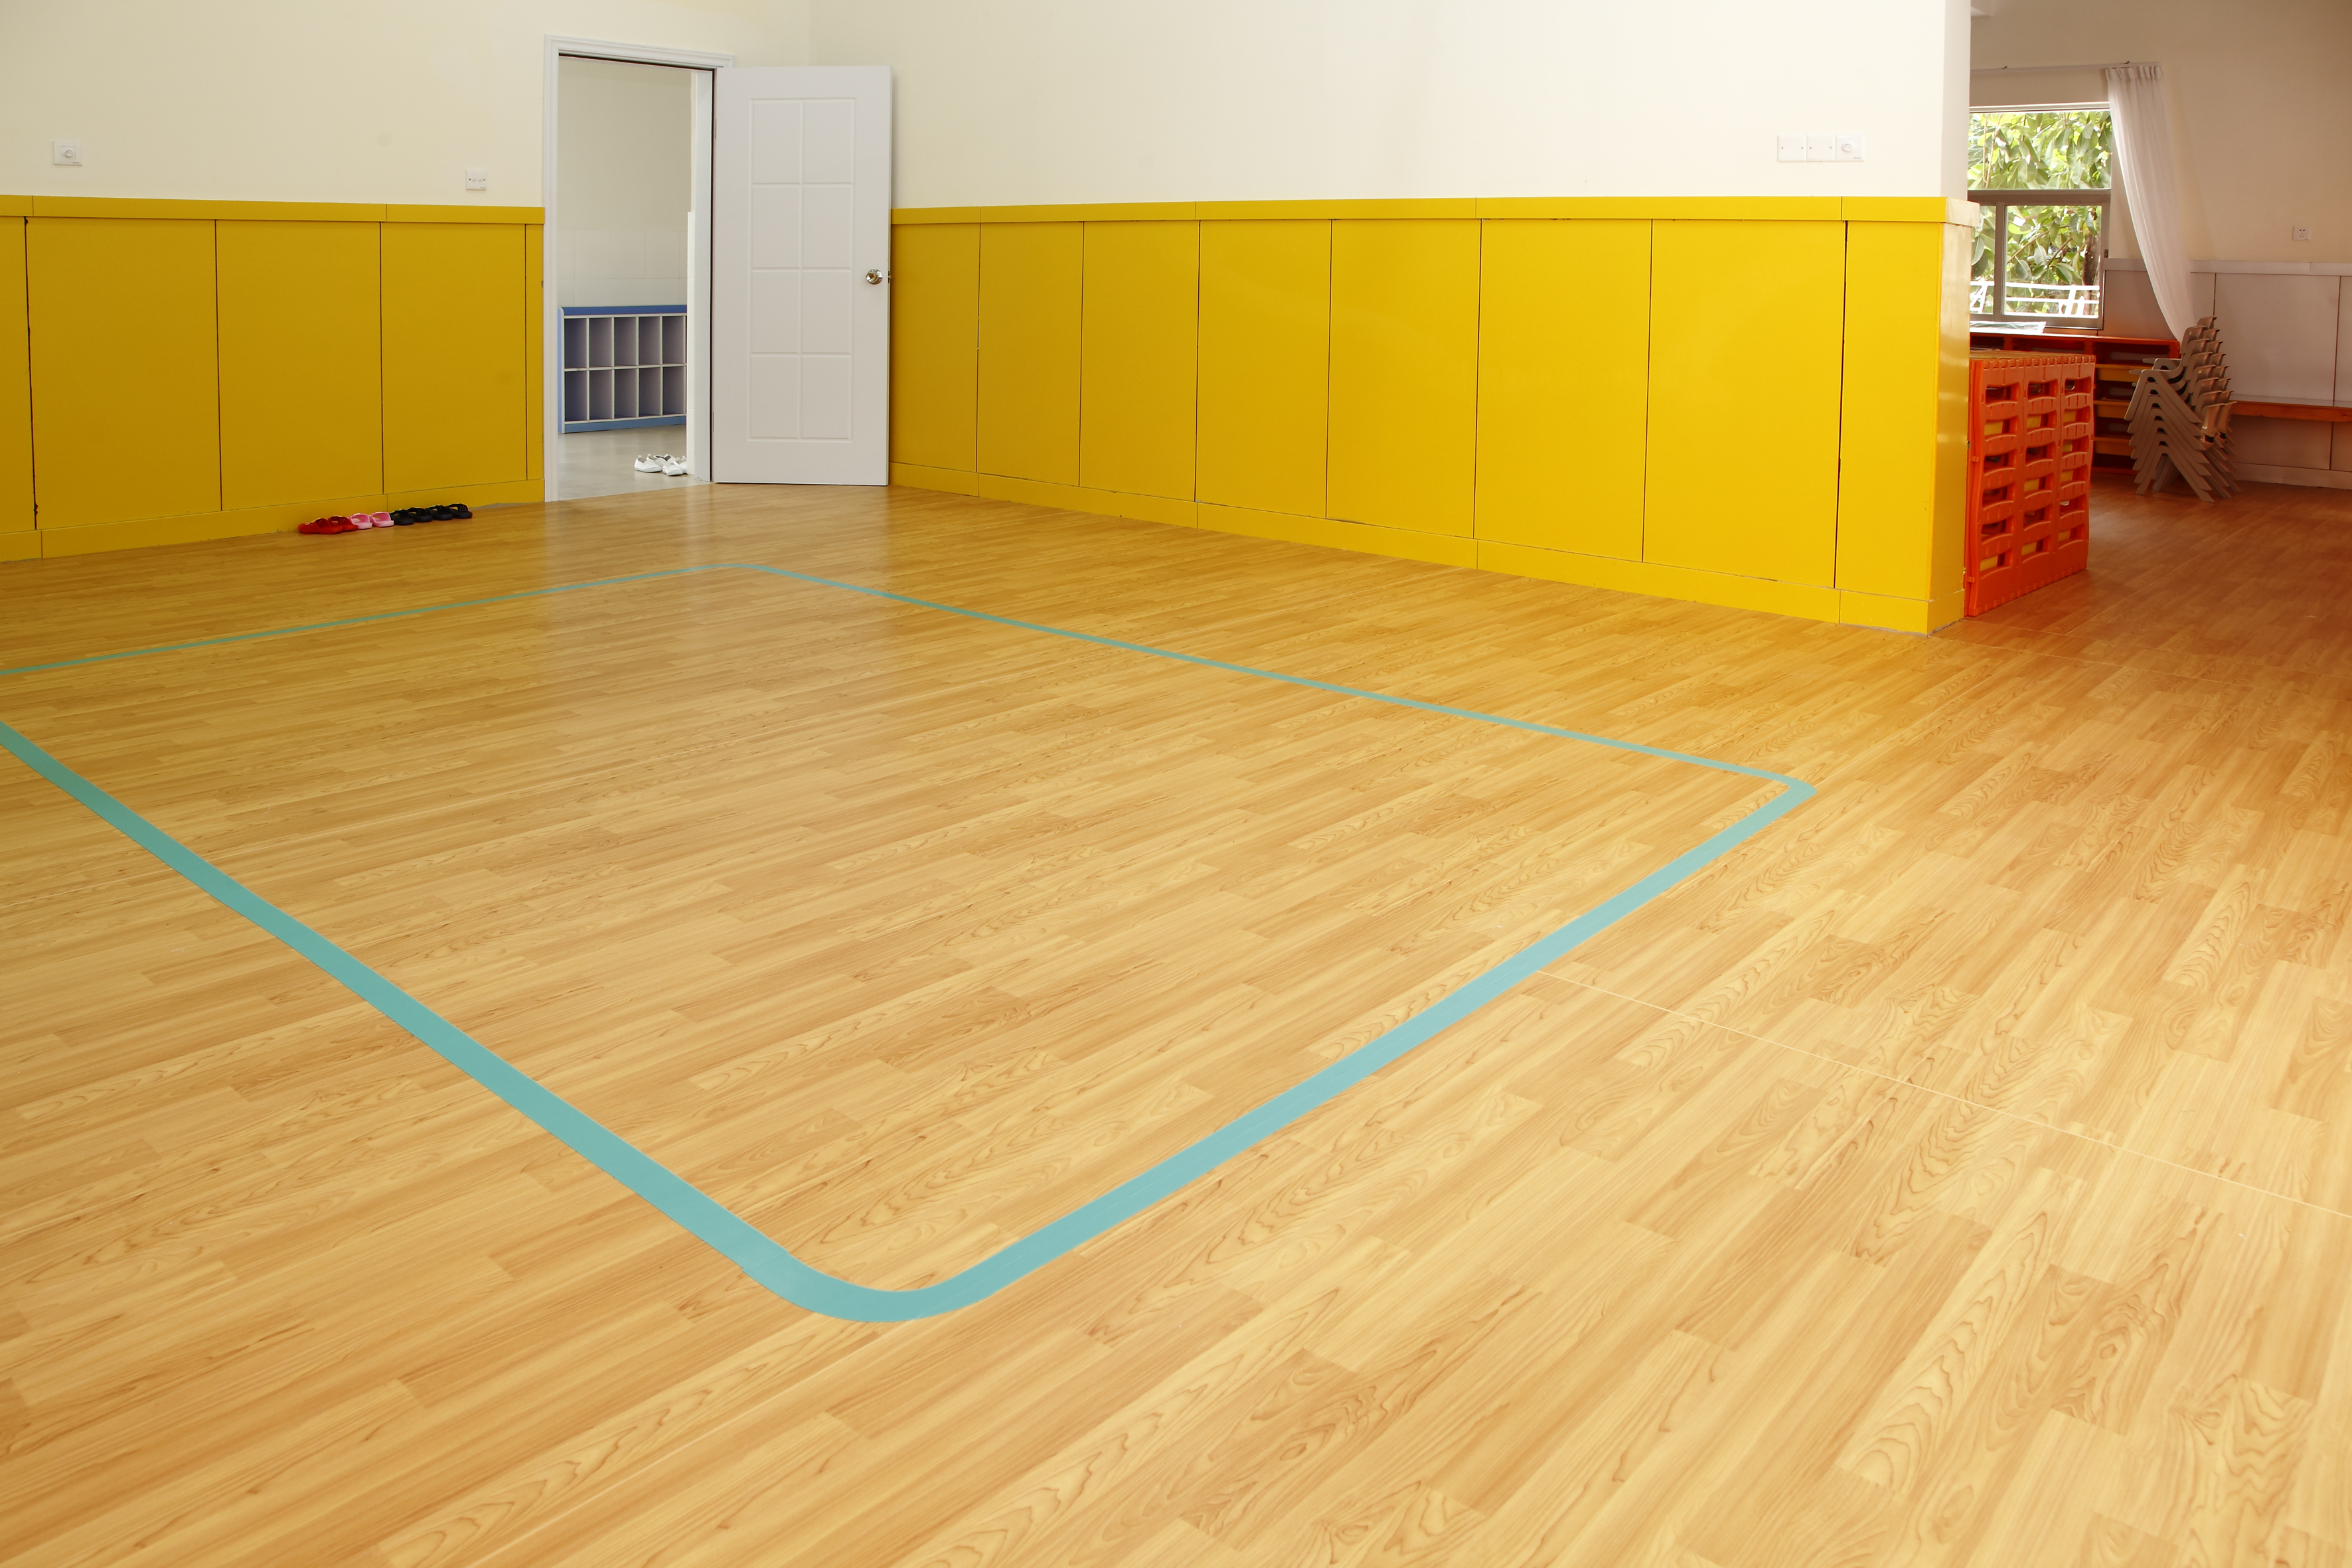 各年龄段教育场所的塑胶地板设计区别【欧陆平台】